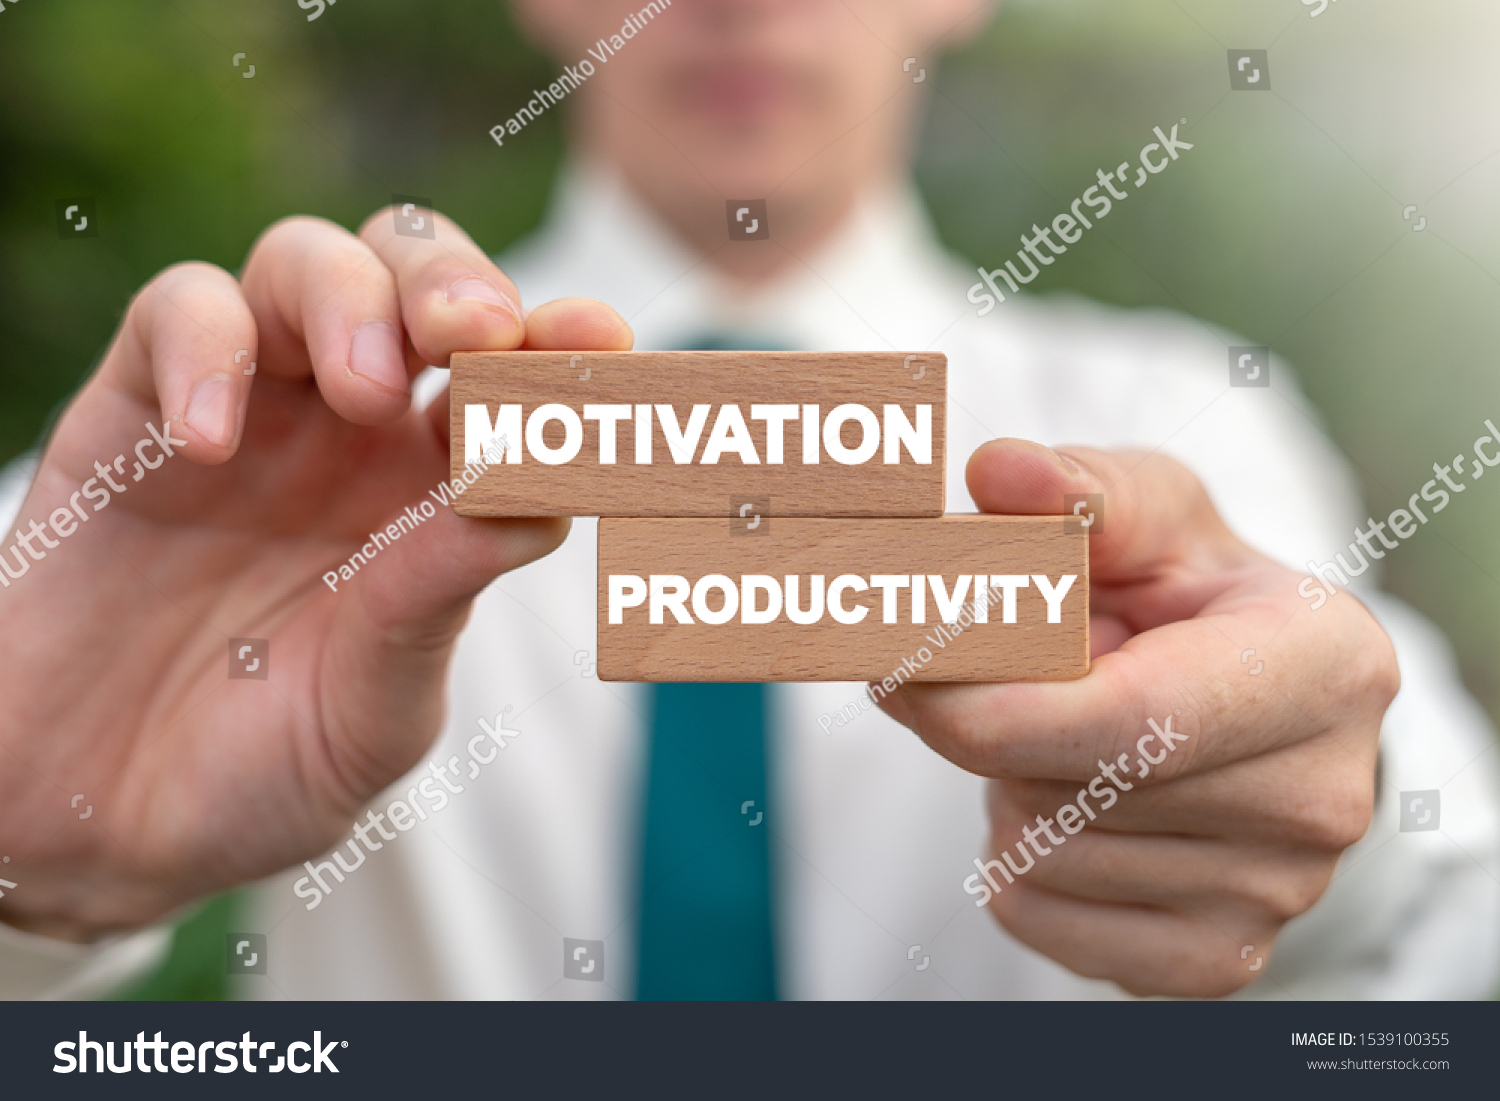 Motivation Productivity Business Efficiency Work Management concept. #1539100355